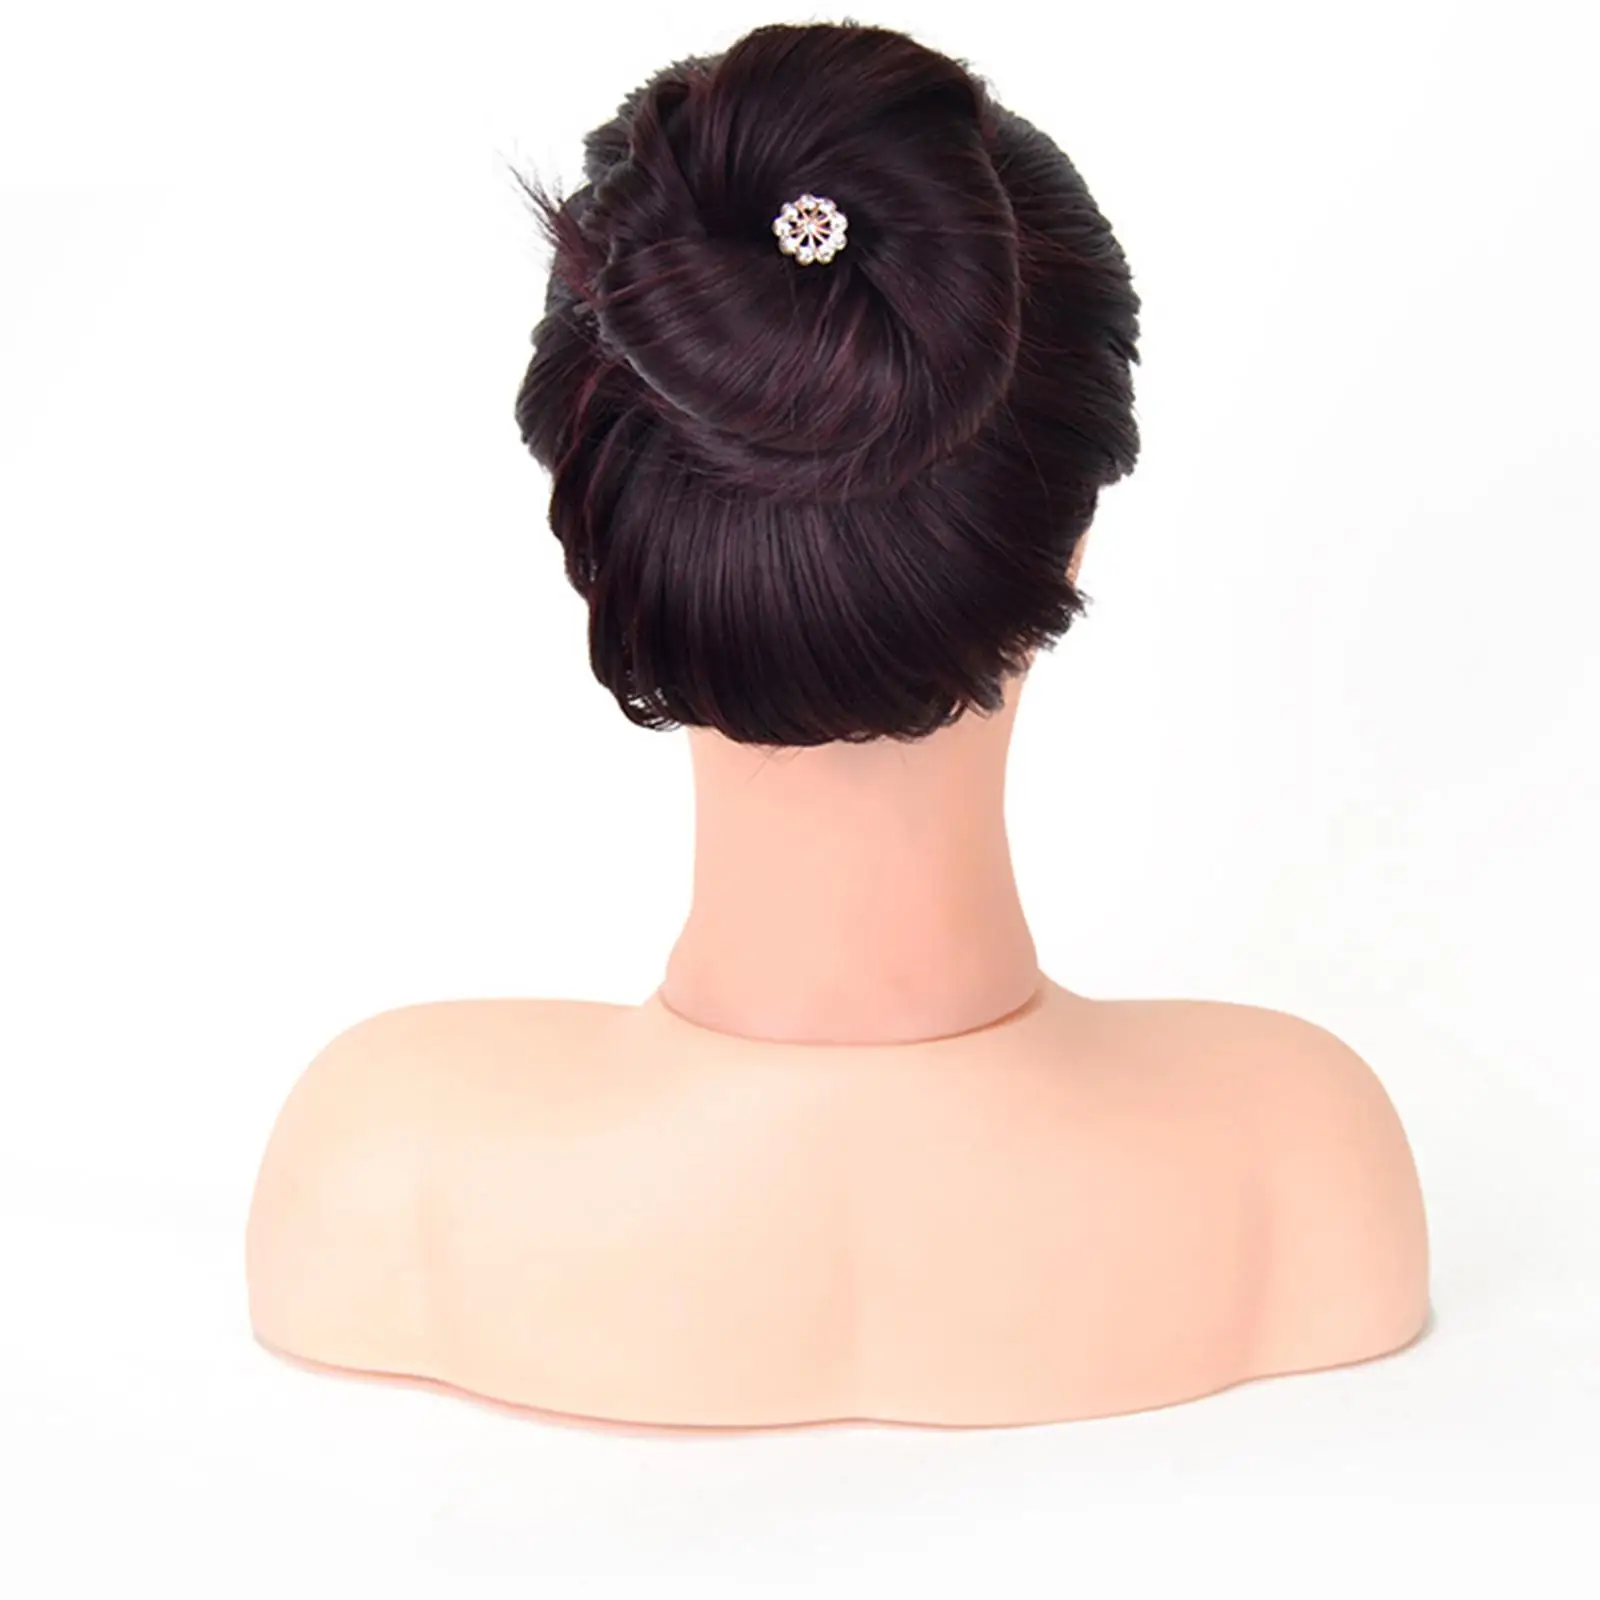 Mannequin Shoulder Display Base Shoulder Support Shoulder Base for Hair Salon Wig Training Raising Wig Styling Hair Extensions